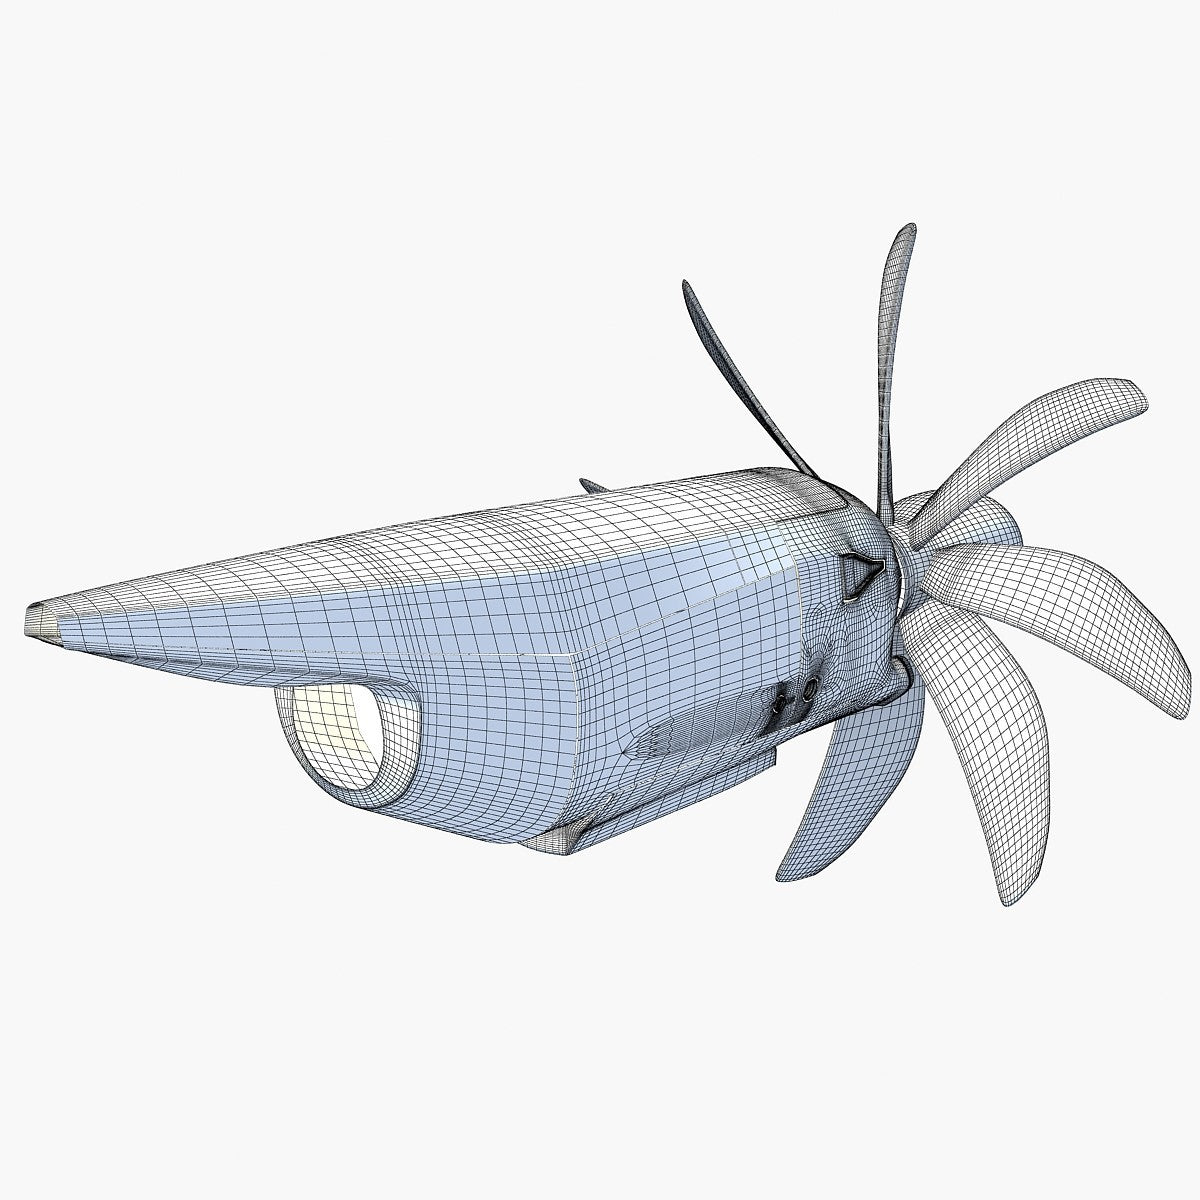 Propfan Jet Engine 3D Model